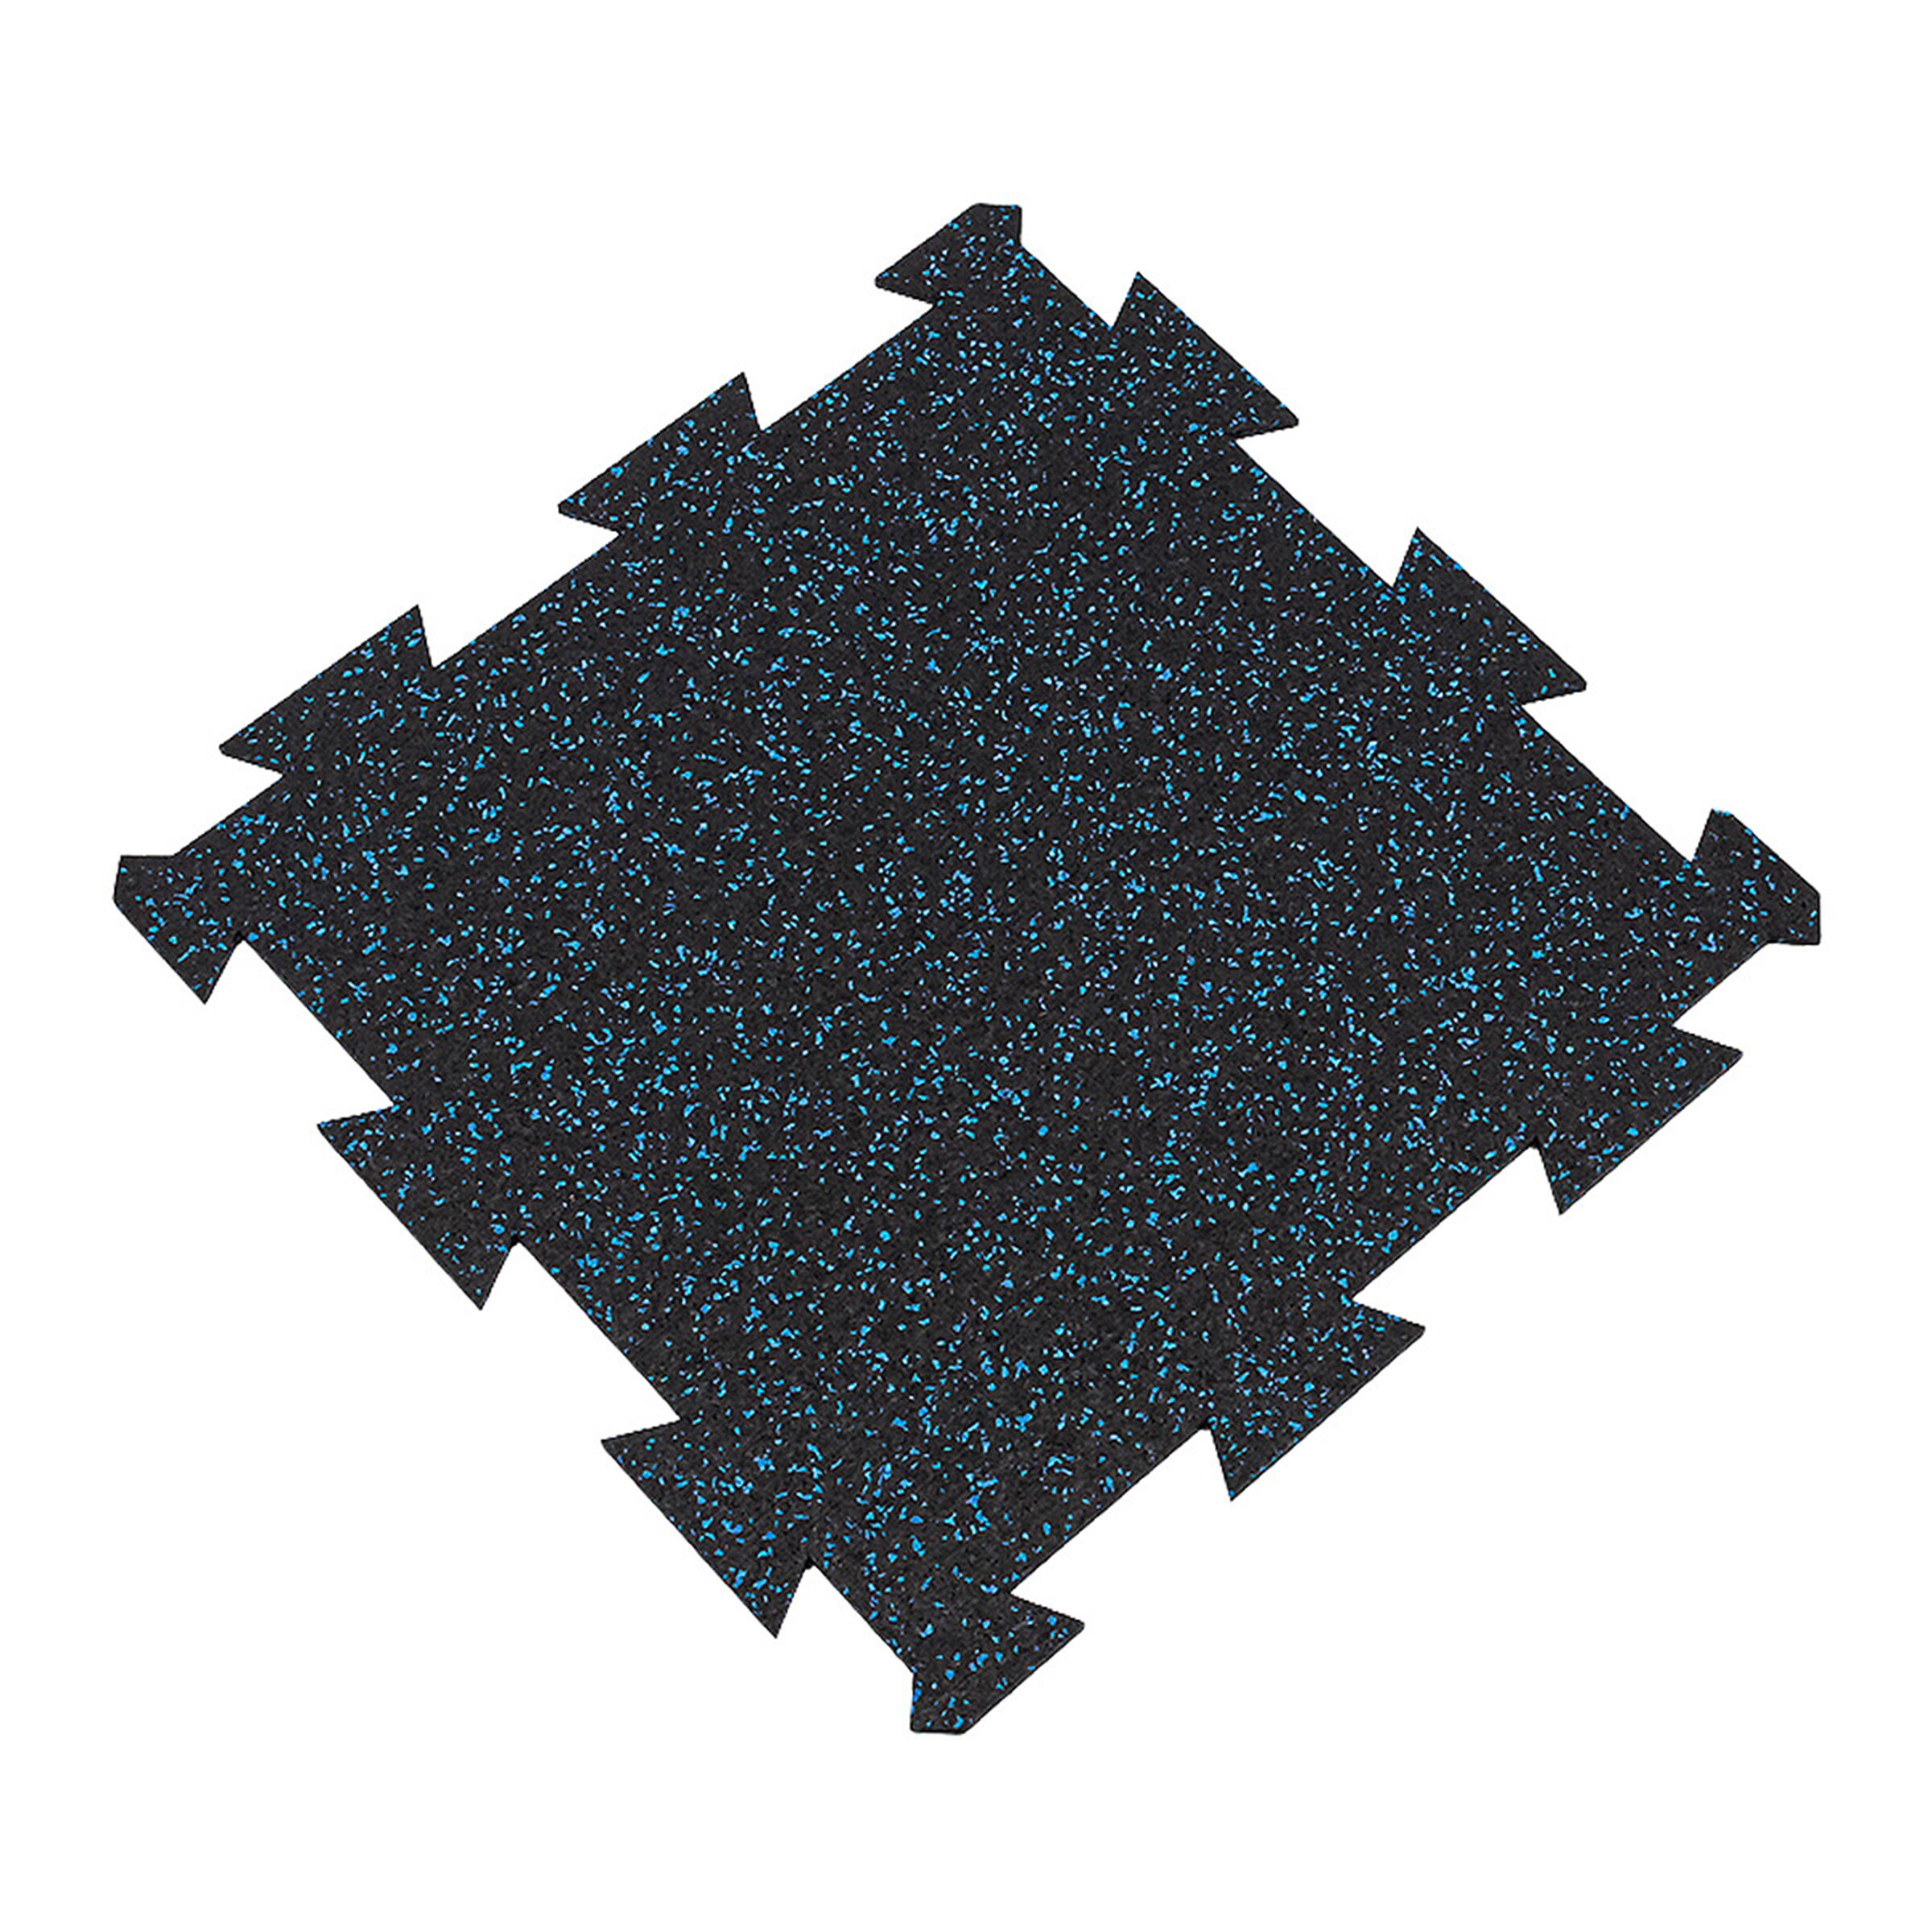 Čierno-modrá gumová modulová puzzle dlažba (stred) FLOMA FitFlo SF1050 - dĺžka 50 cm, šírka 50 cm, výška 1,6 cm